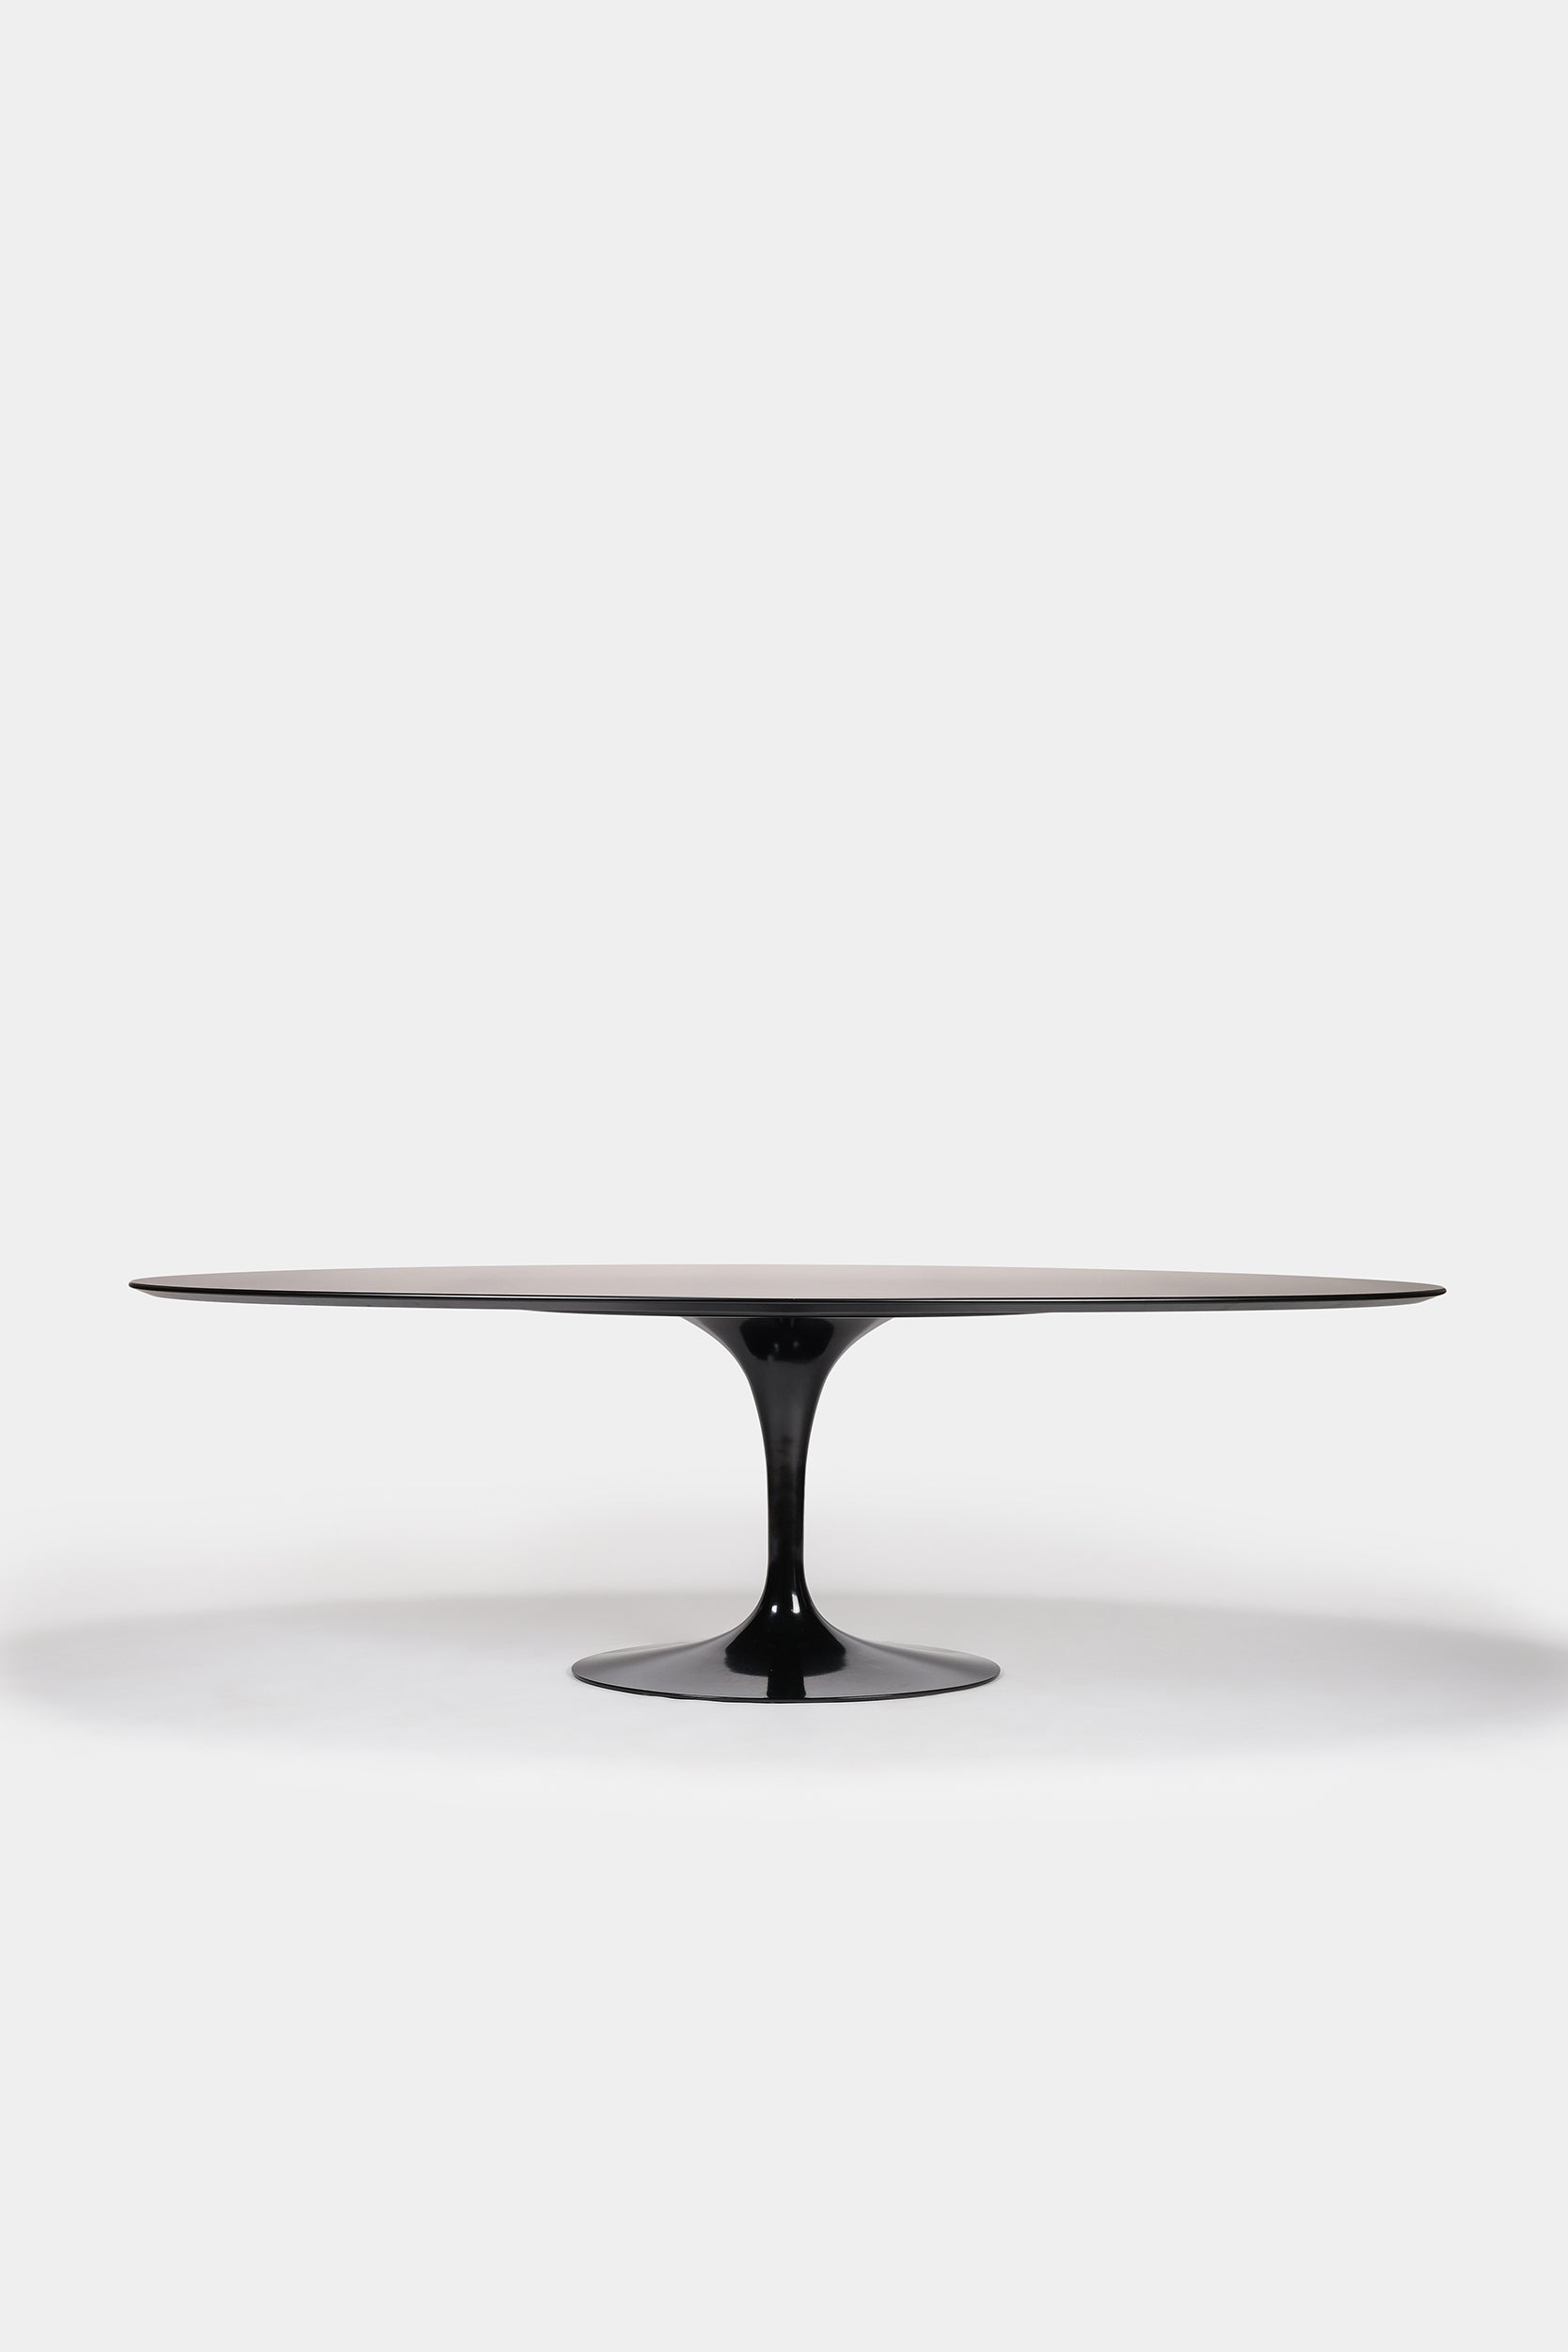 Eero Saarinen, Tulip Tisch Oval XXL, Knoll International, 50er